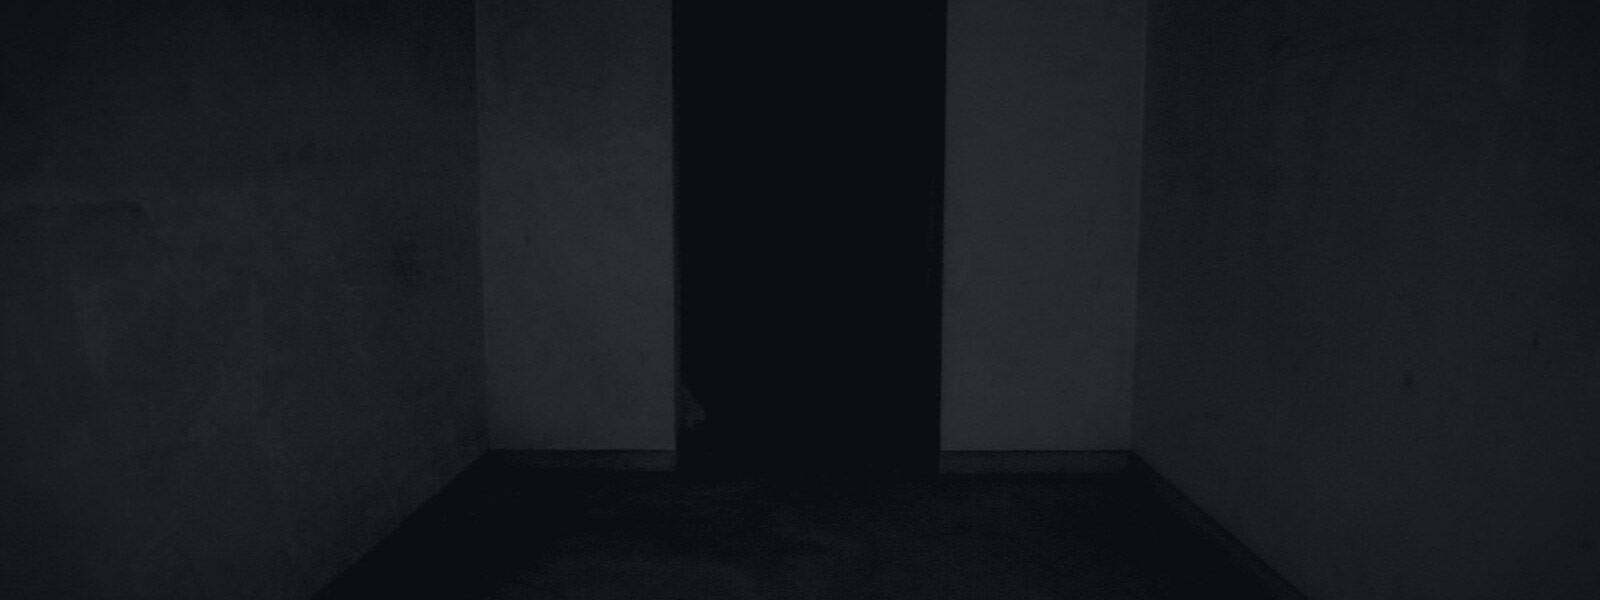 《多洛雷斯·罗奇的恐怖》的背景艺术作品